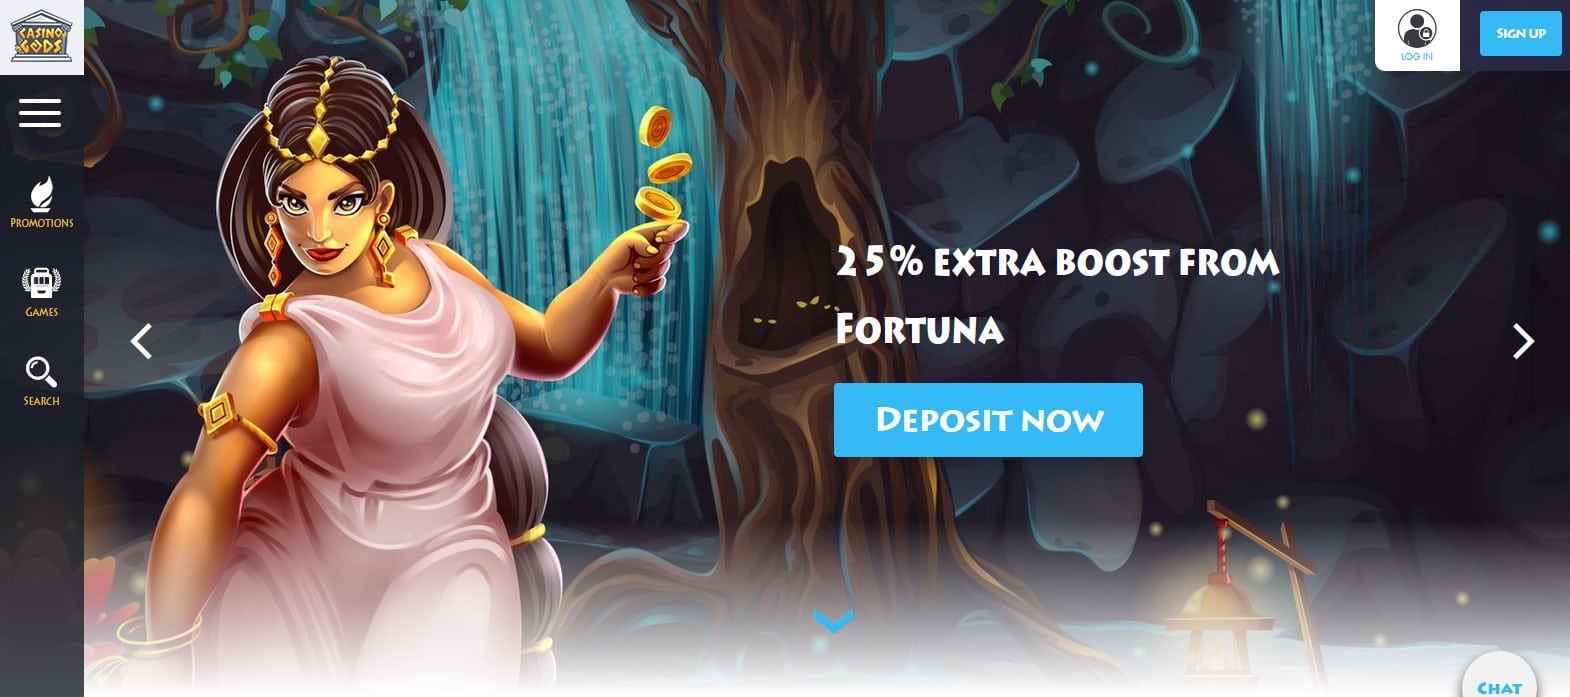 The Fortuna Bonus